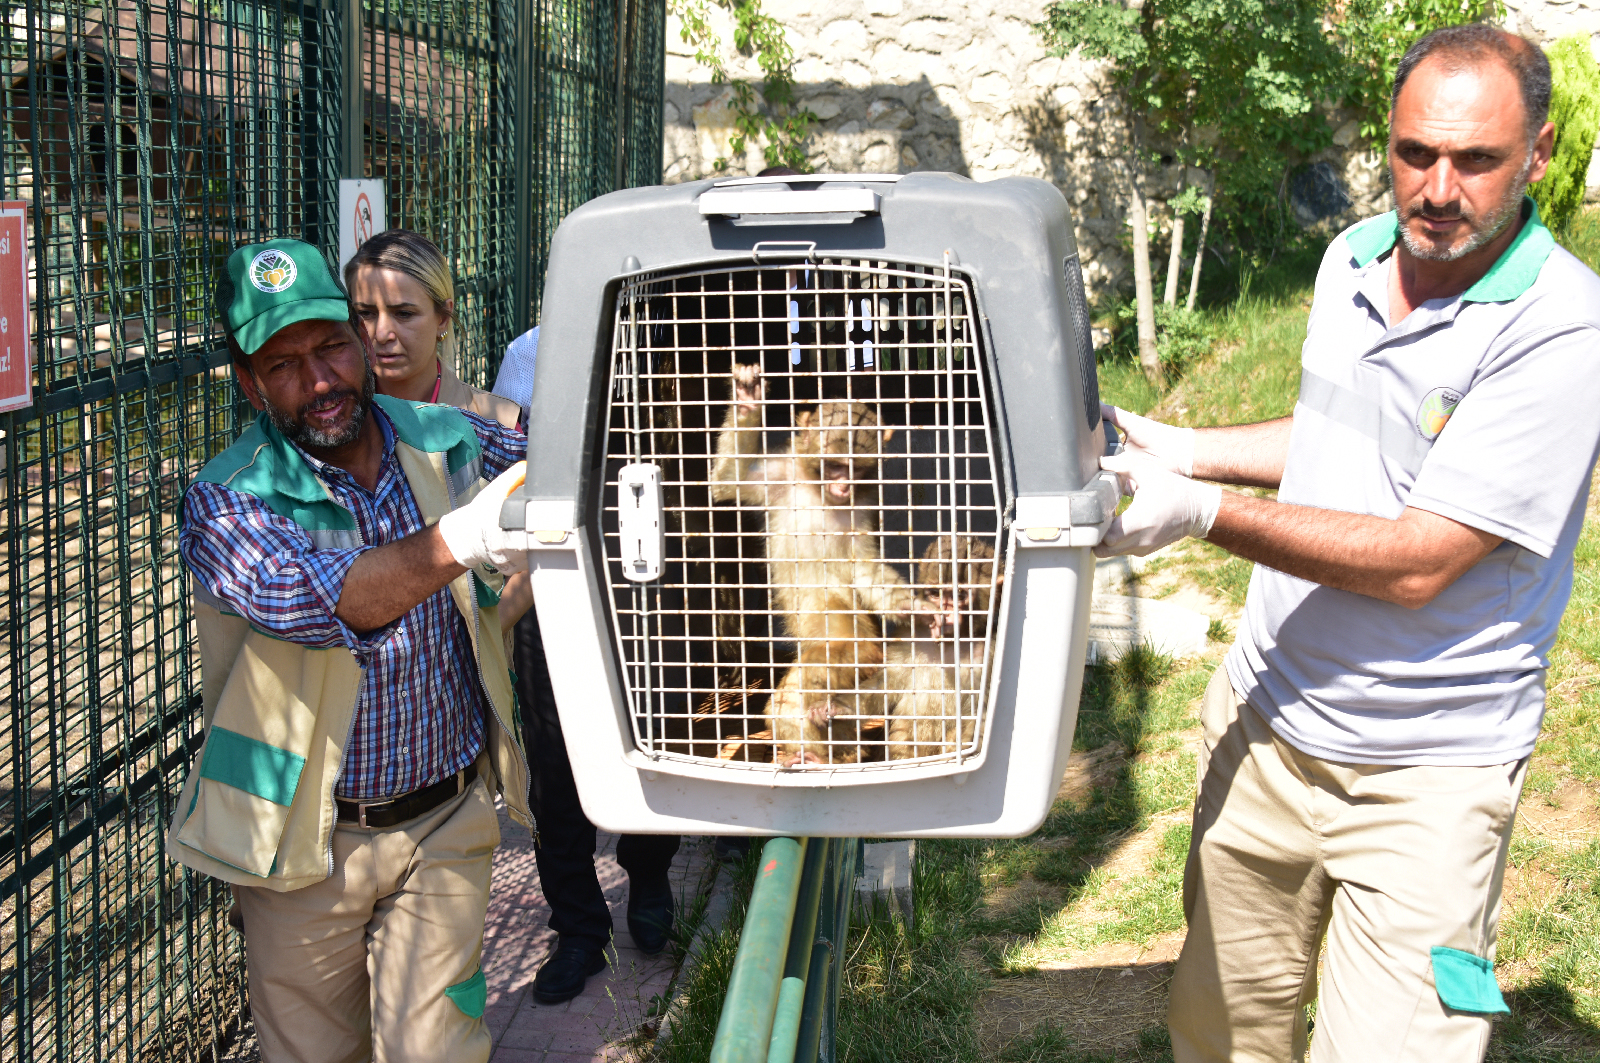 İran Sınırındaki Gürbulak Sınır kapısında kaçak olarak Türkiye’ye sokulmak istenirken  yakalanan 3 makak maymunu Ağrı Doğa Koruma Şube Müdürlüğü tarafından Malatya Büyükşehir Belediyesi Hayvanat bahçesine teslim edildi.